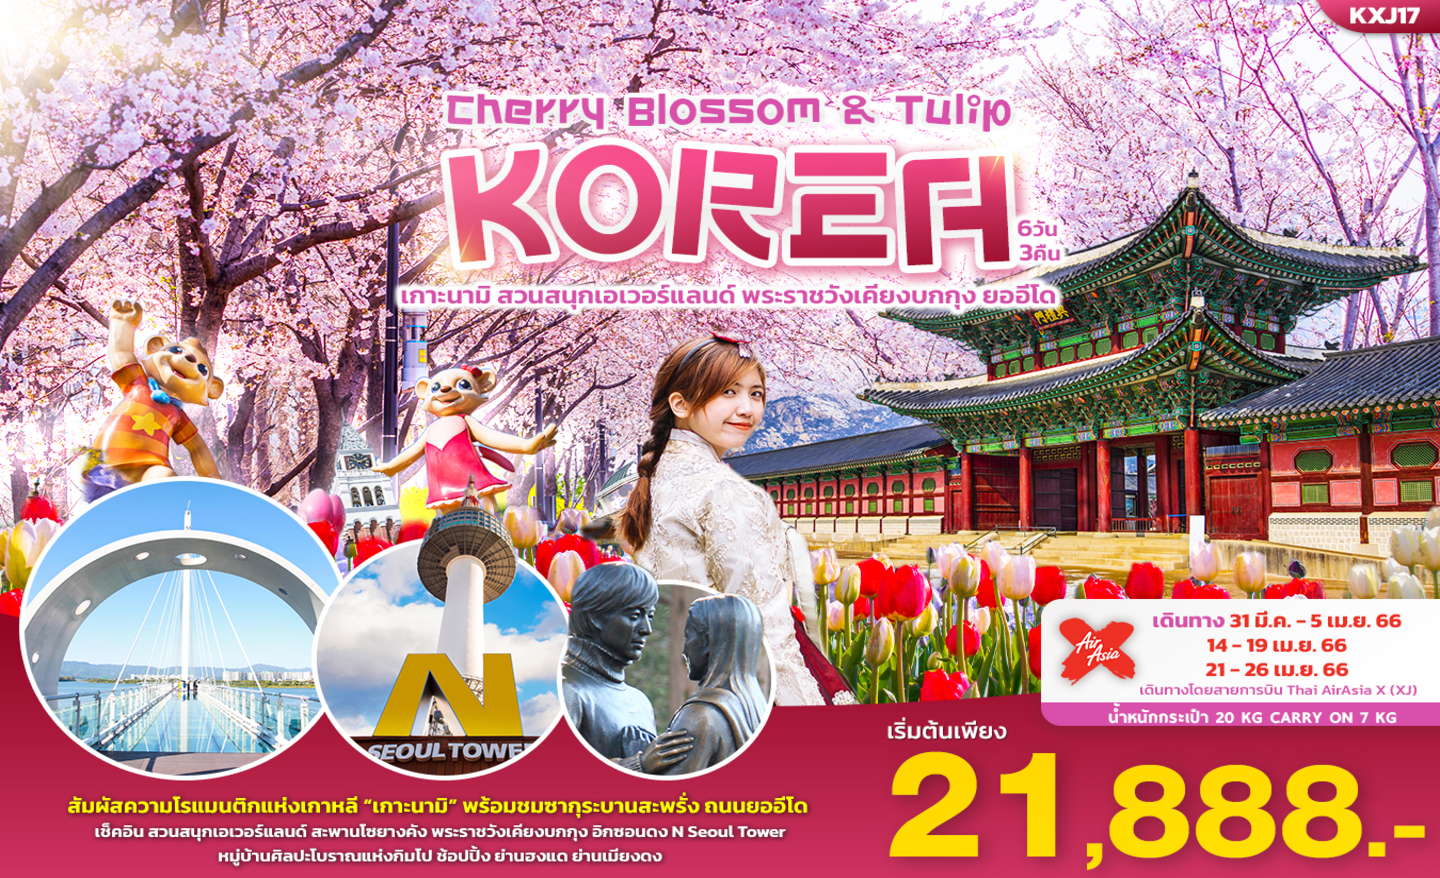 ทัวร์เกาหลี Cherry Blossom & Tulip Korea (เม.ย 66)